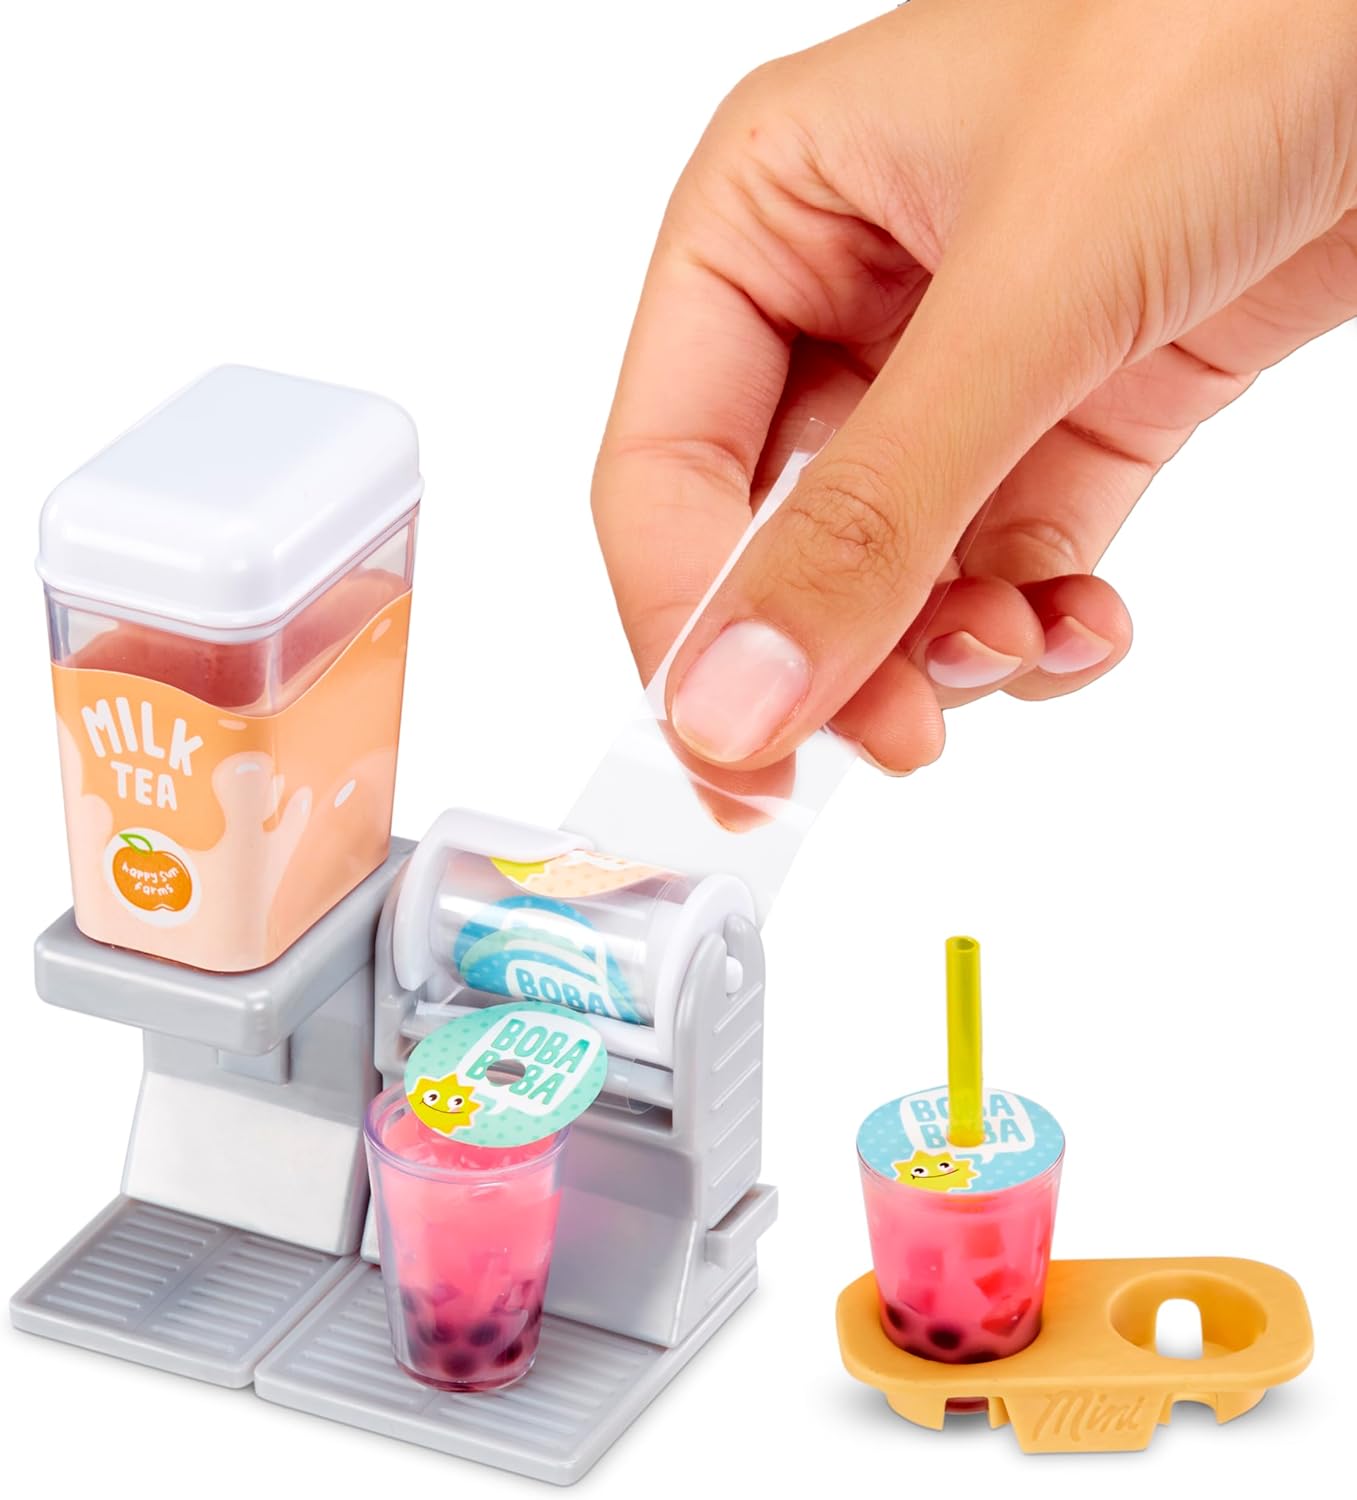 MGA's Miniverse Make It Mini Ice Cream Social Mini Collectibles 